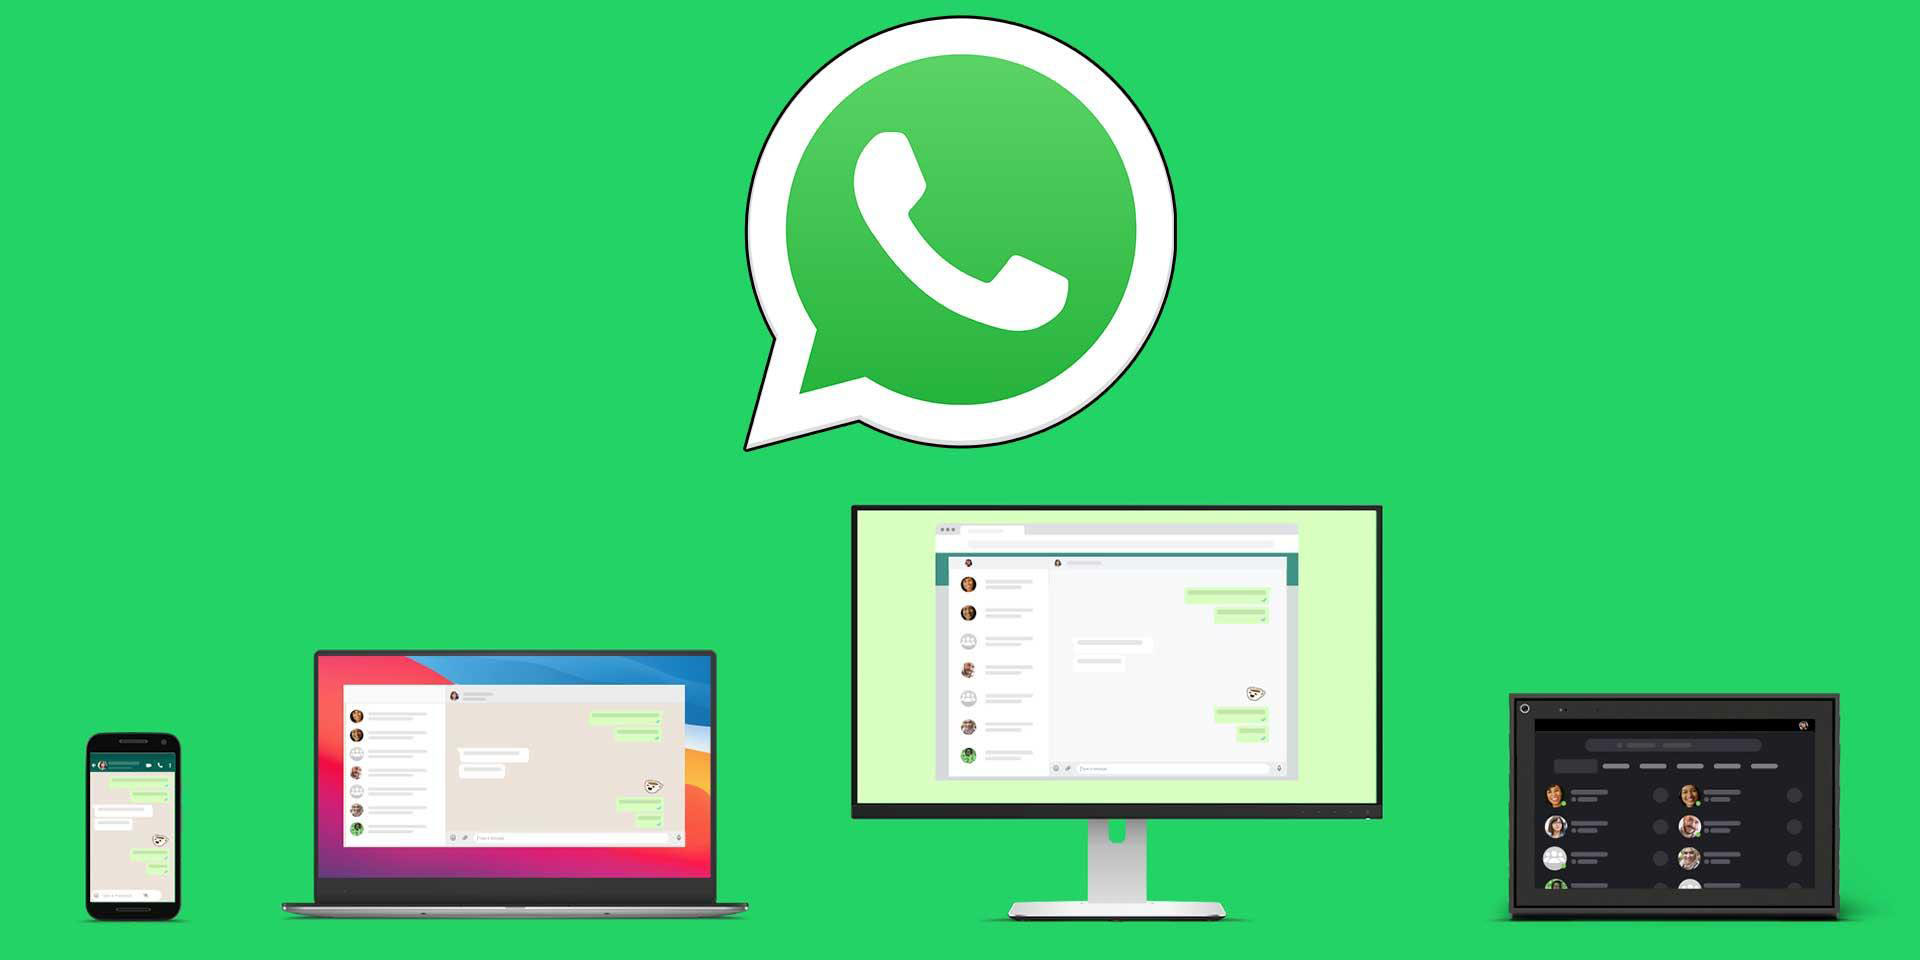 WhatsApp realiza pruebas para usar WhatsApp web con el celular apagado | El Imparcial de Oaxaca